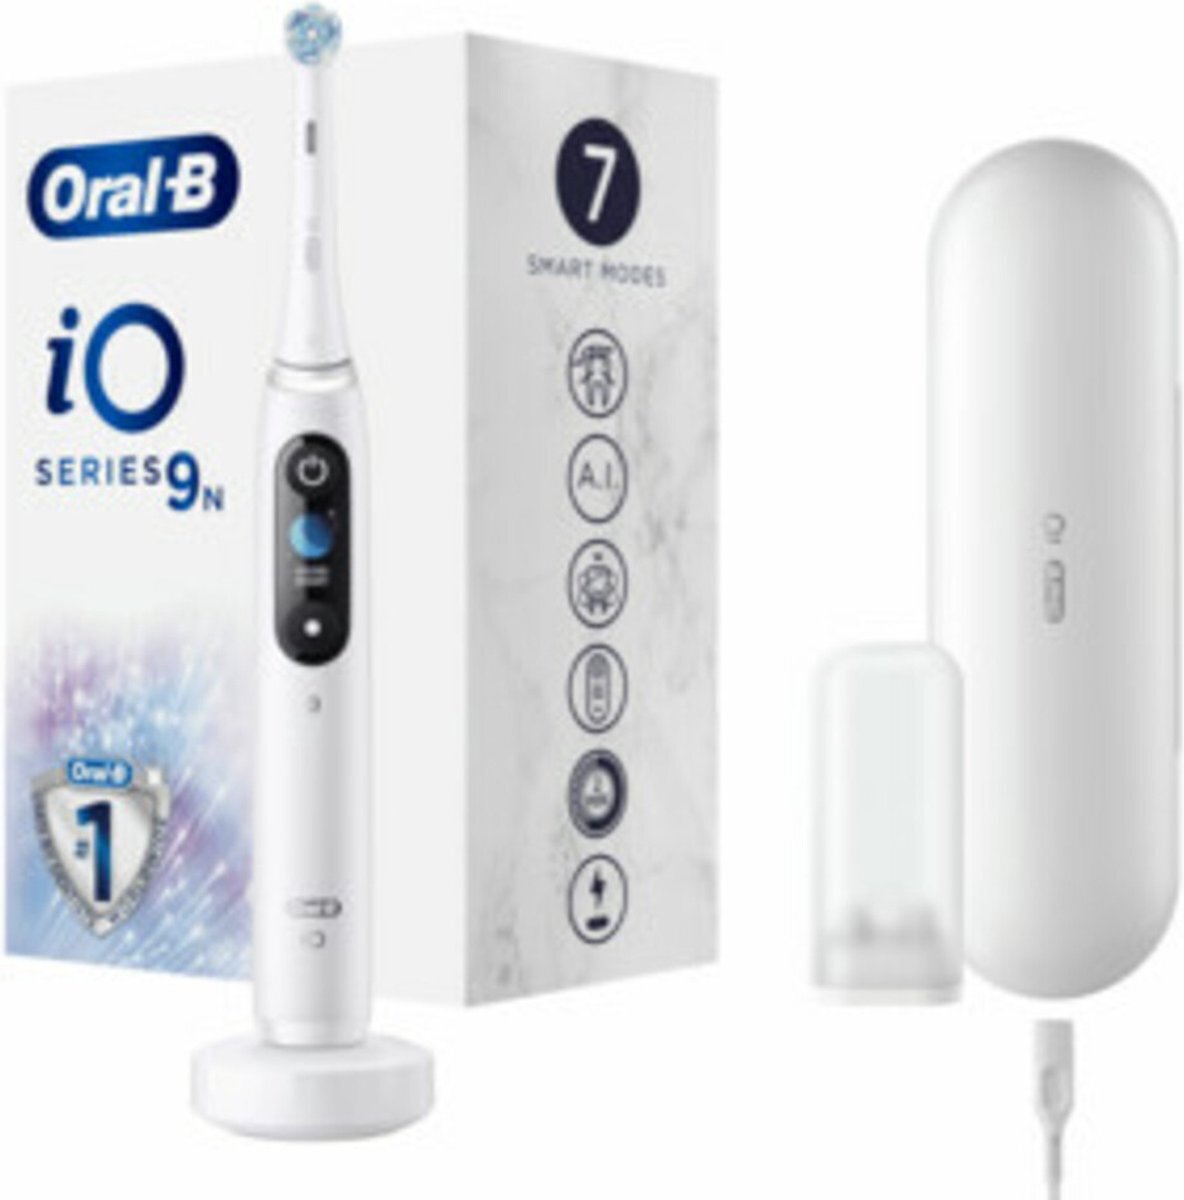 Oral-B Oral-B iO 9N - White - Elektrische Tandenborstel Ontworpen Door Braun wit